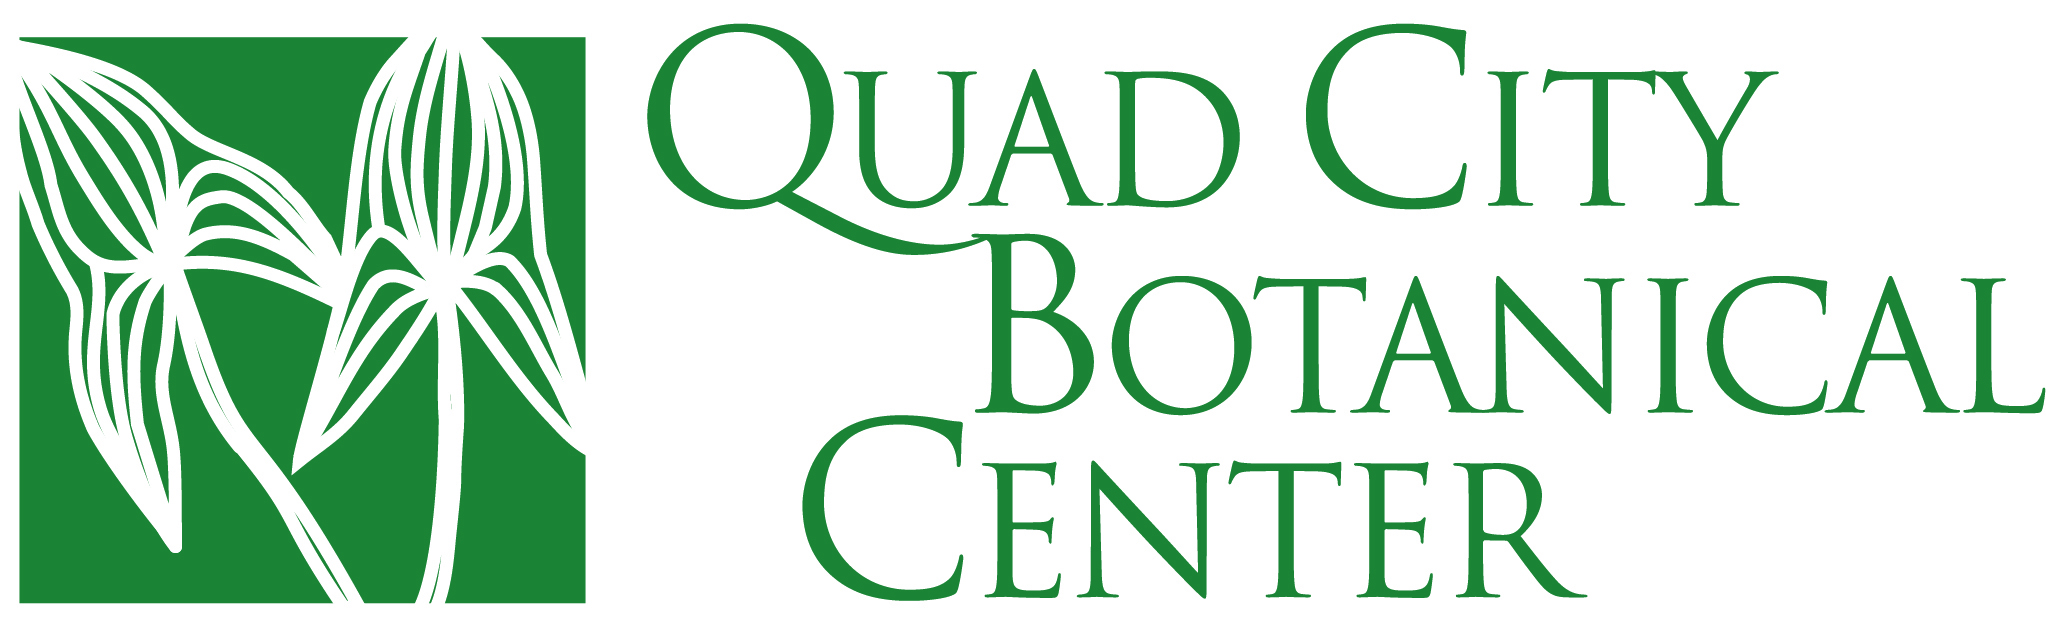 Quad City Botanical Center logo